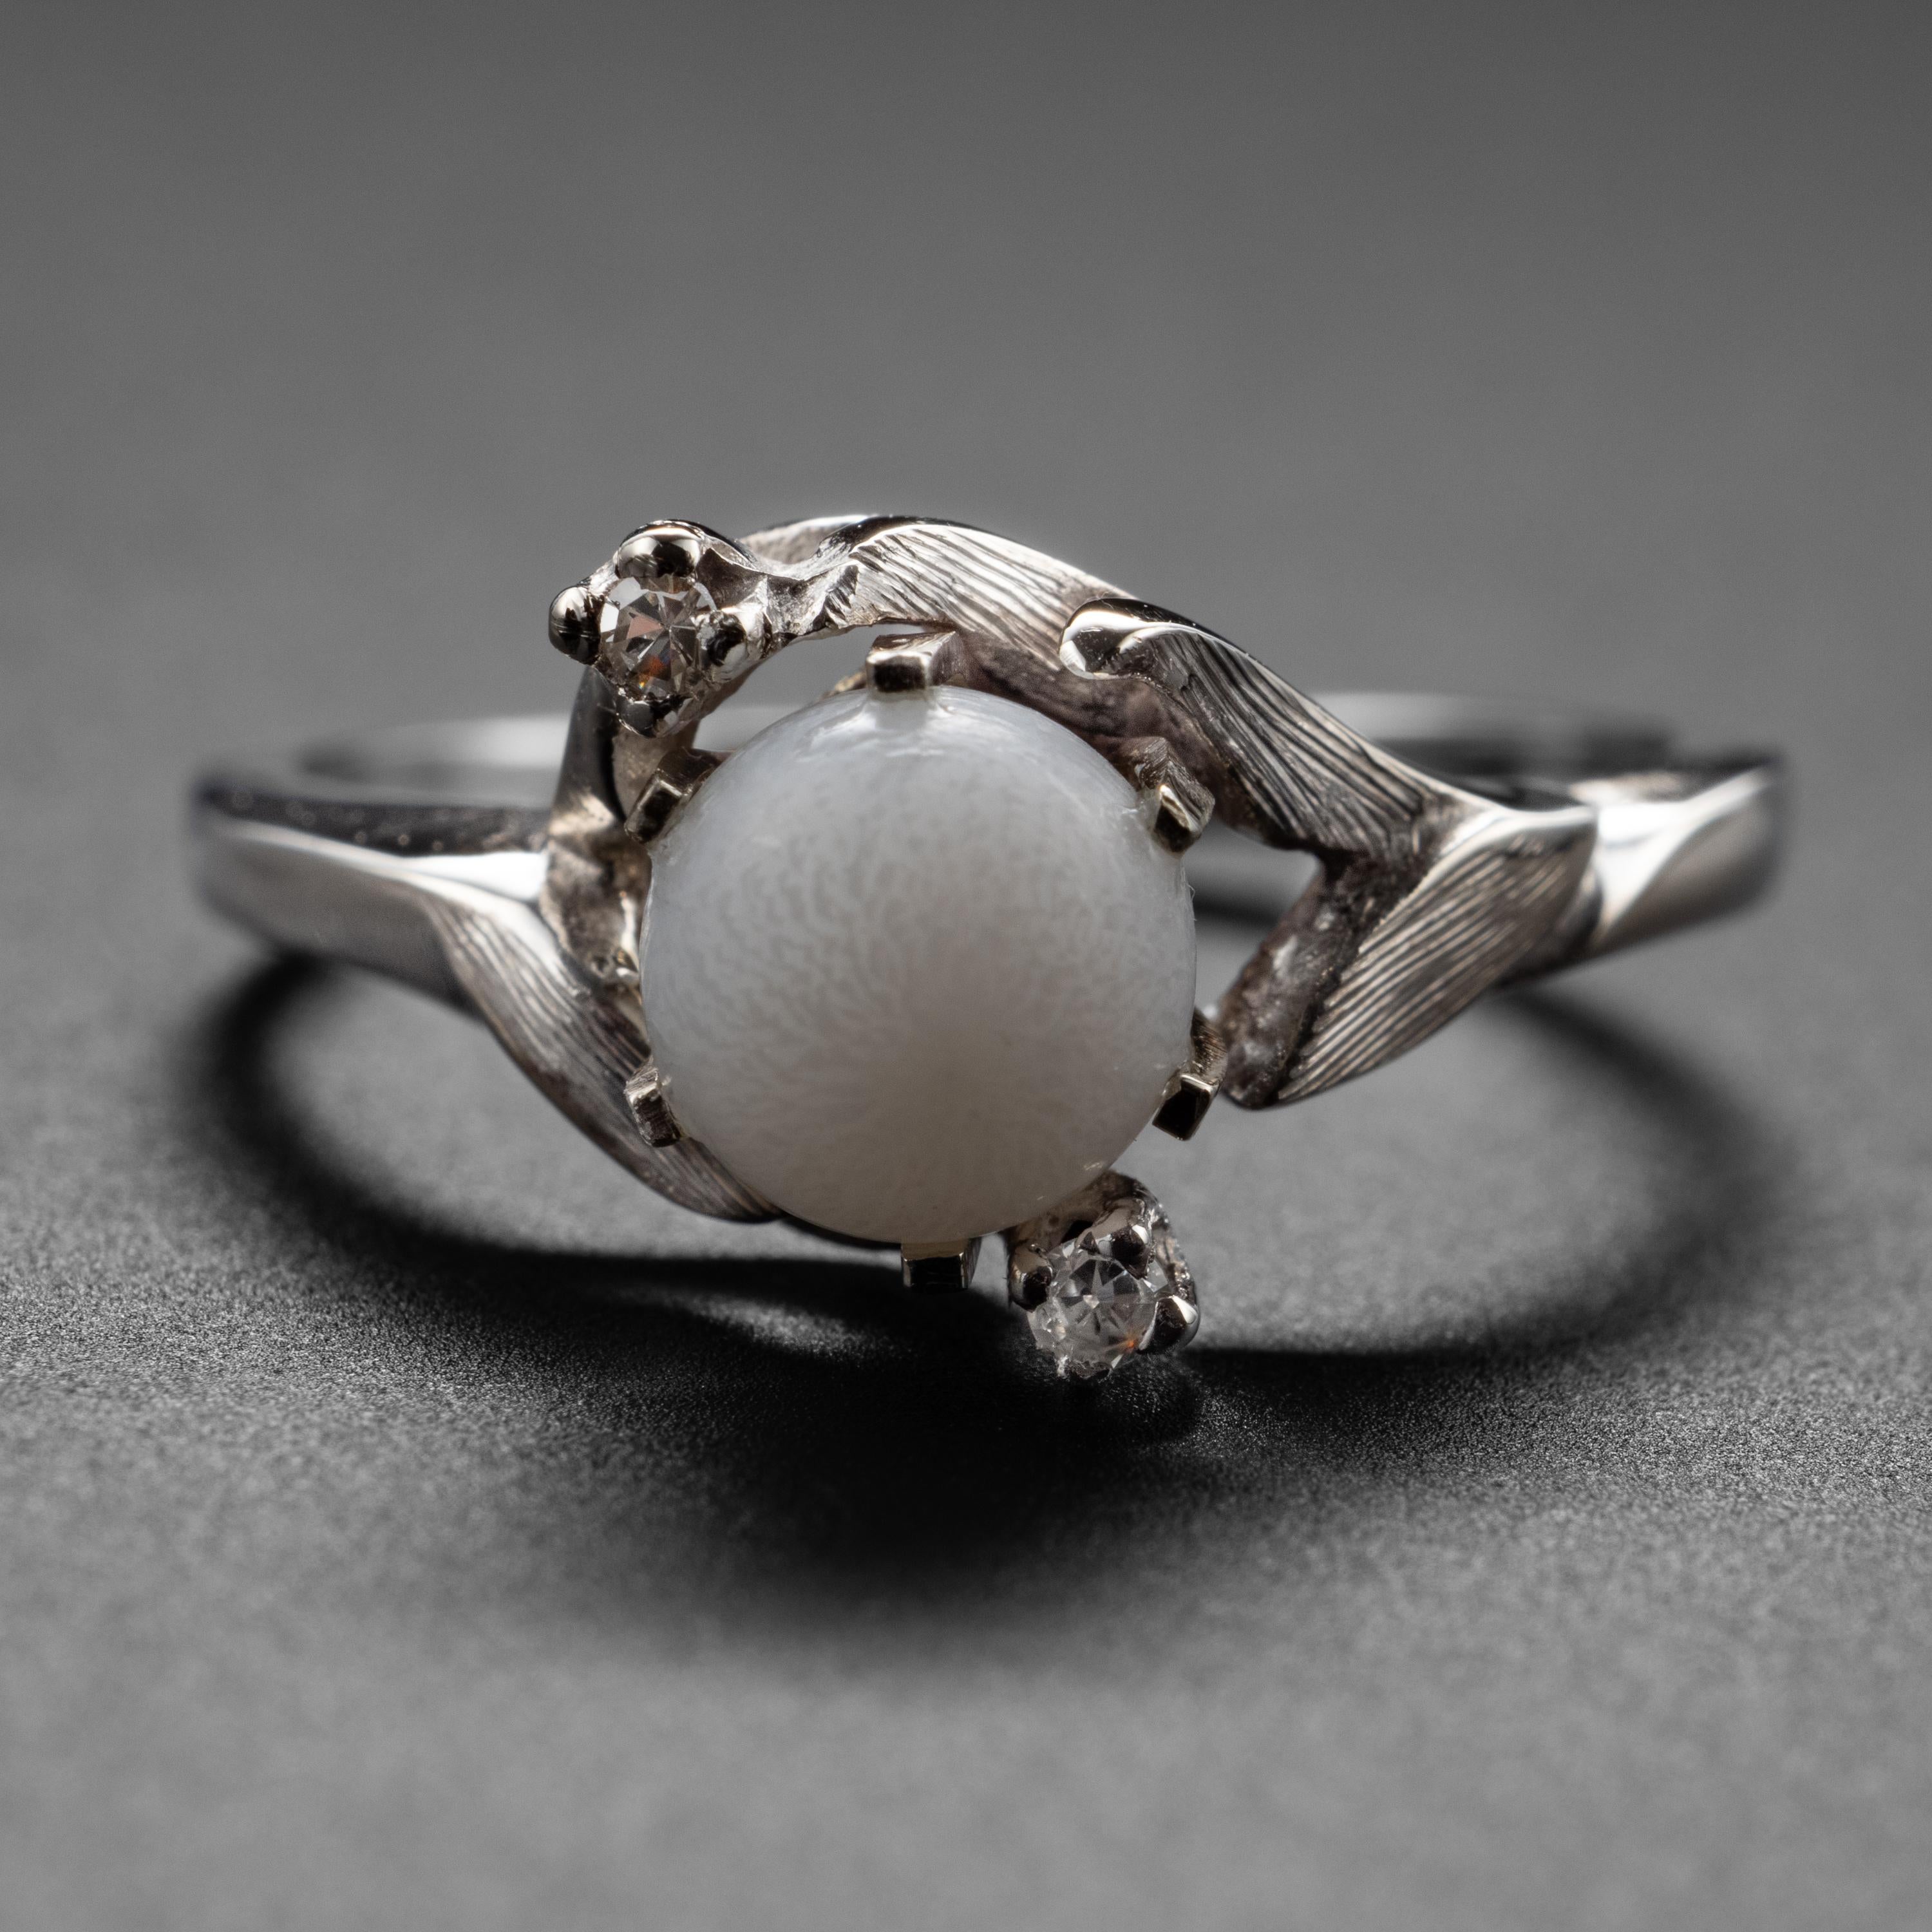 In einem 14-Karat-Weißgoldring mit Diamanten aus den frühen 1950er Jahren ist eine faszinierende und seltene Perle eingearbeitet, von der Sie wahrscheinlich gar nicht wussten, dass es sie gibt: eine natürliche Salzwasser-Muschelperle. Die meisten